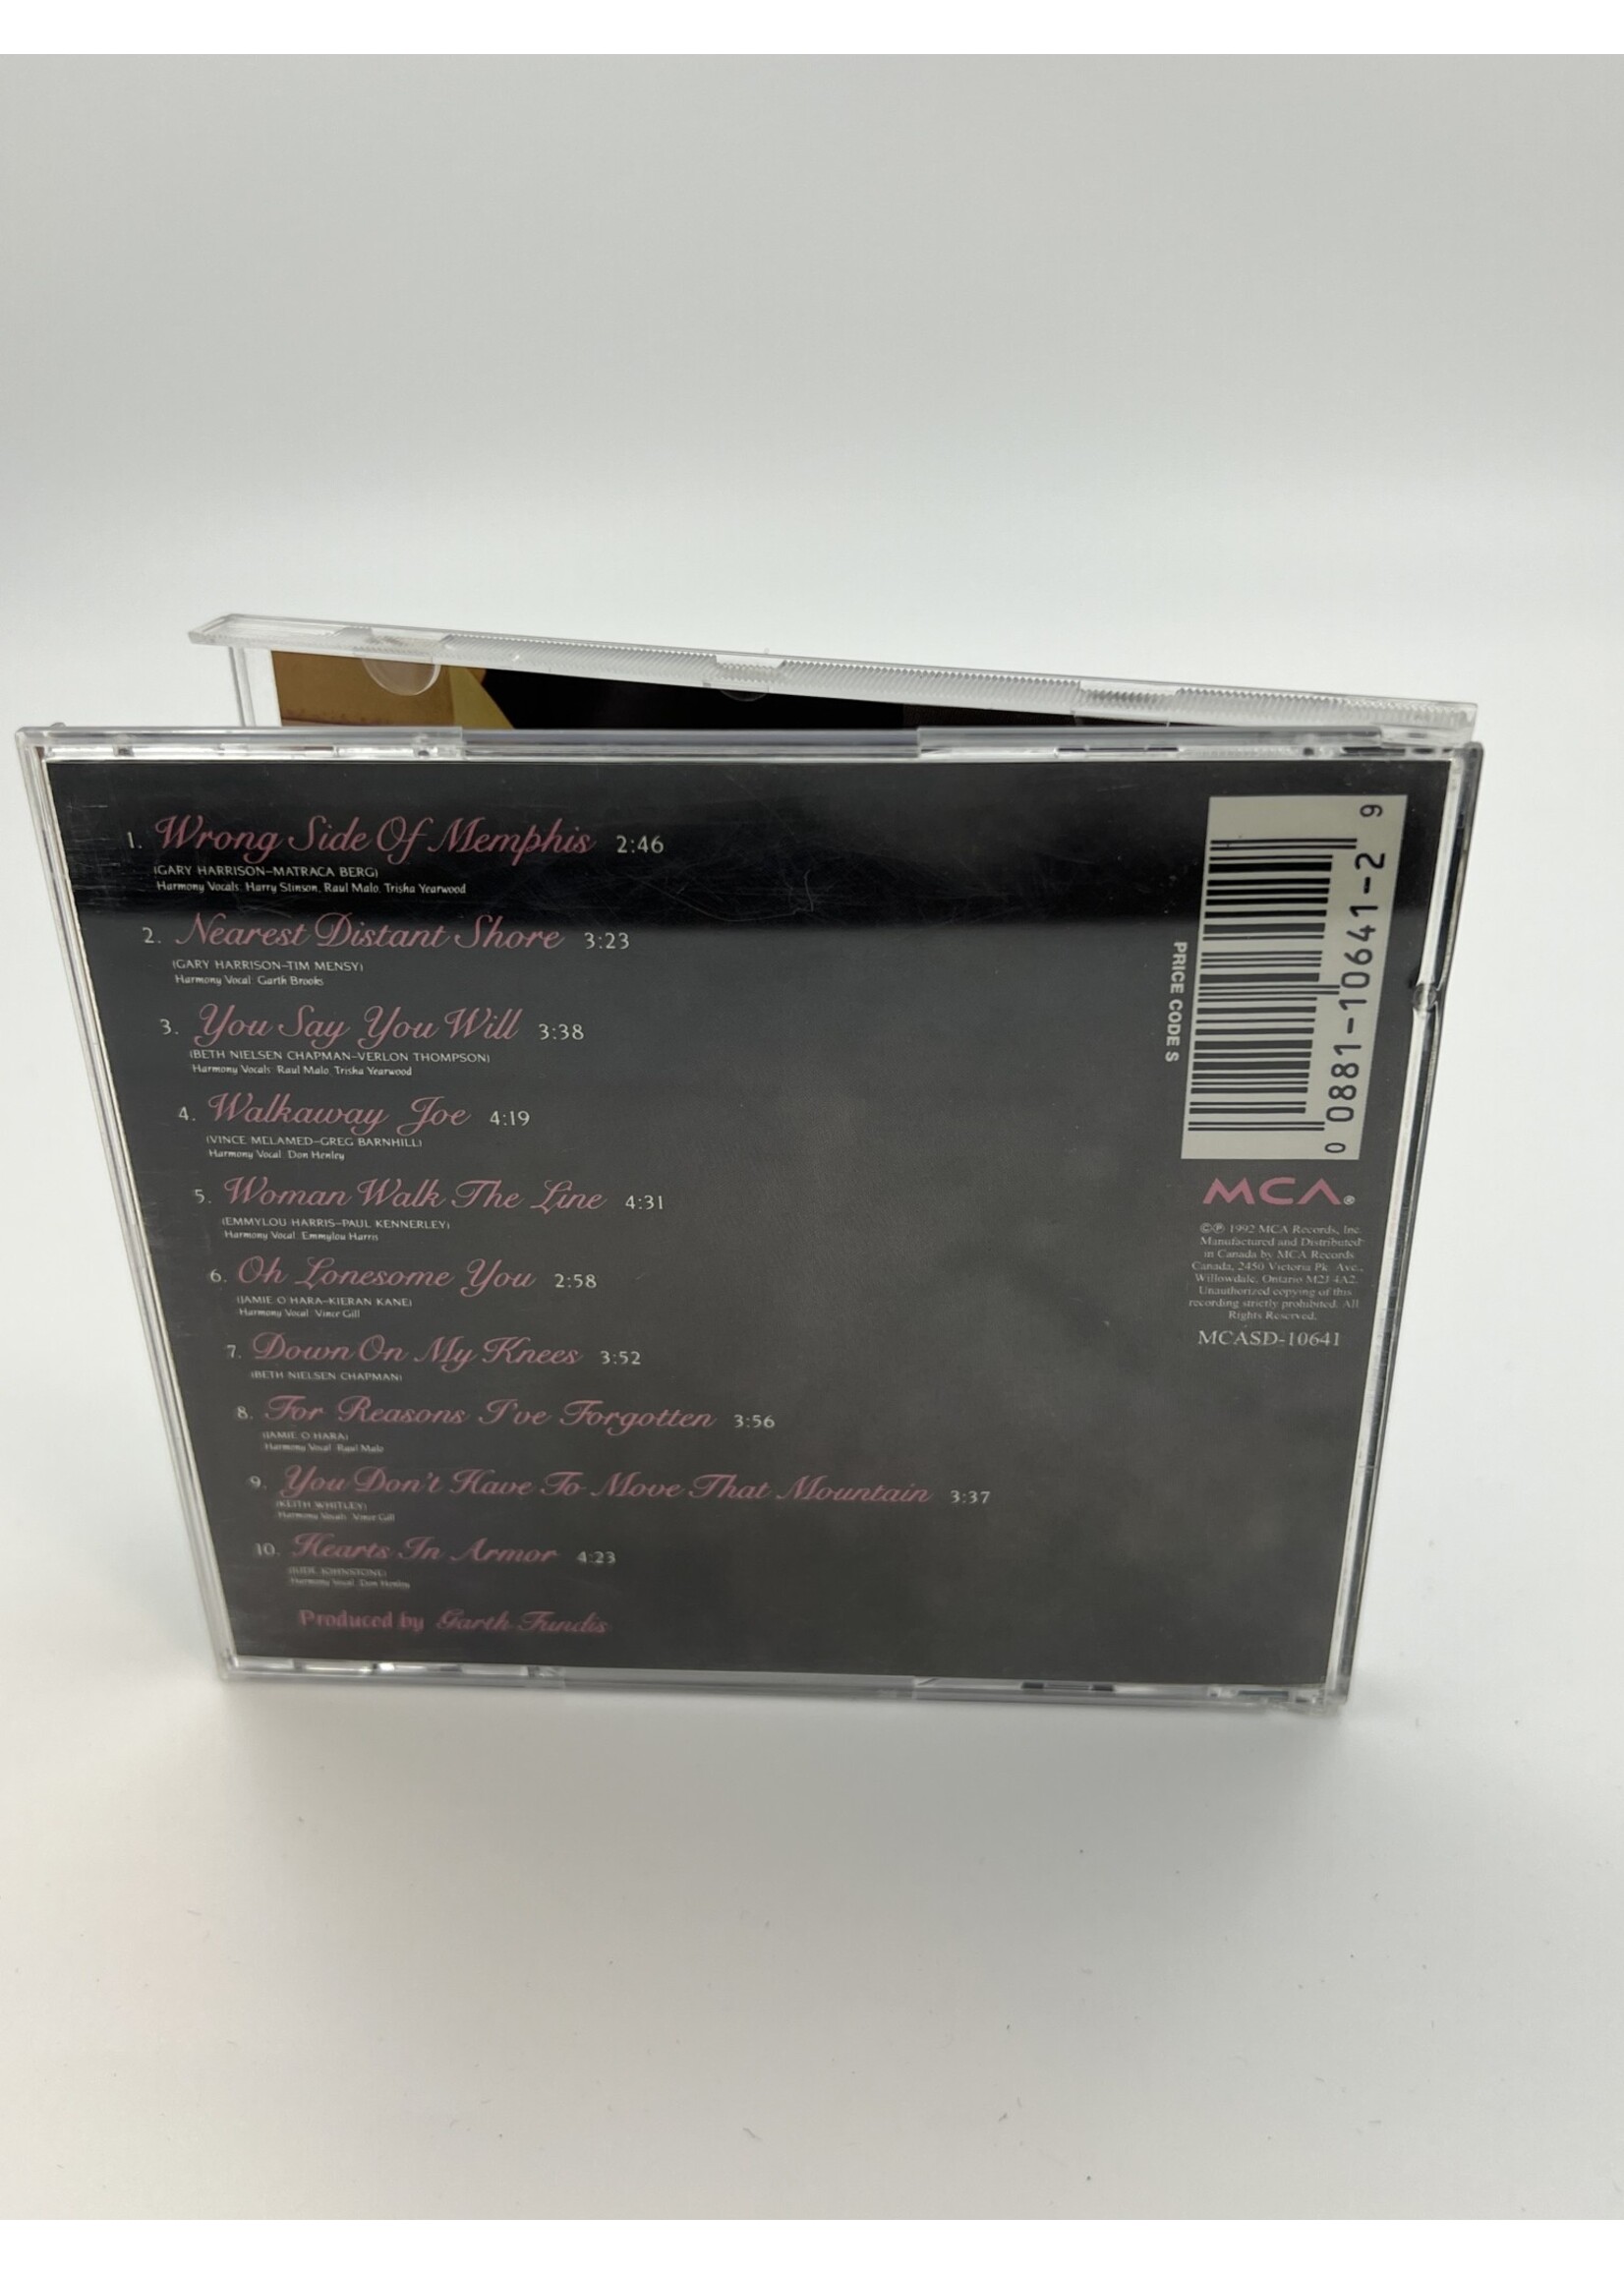 CD Trisha Yearwood Hearts In Armor CD